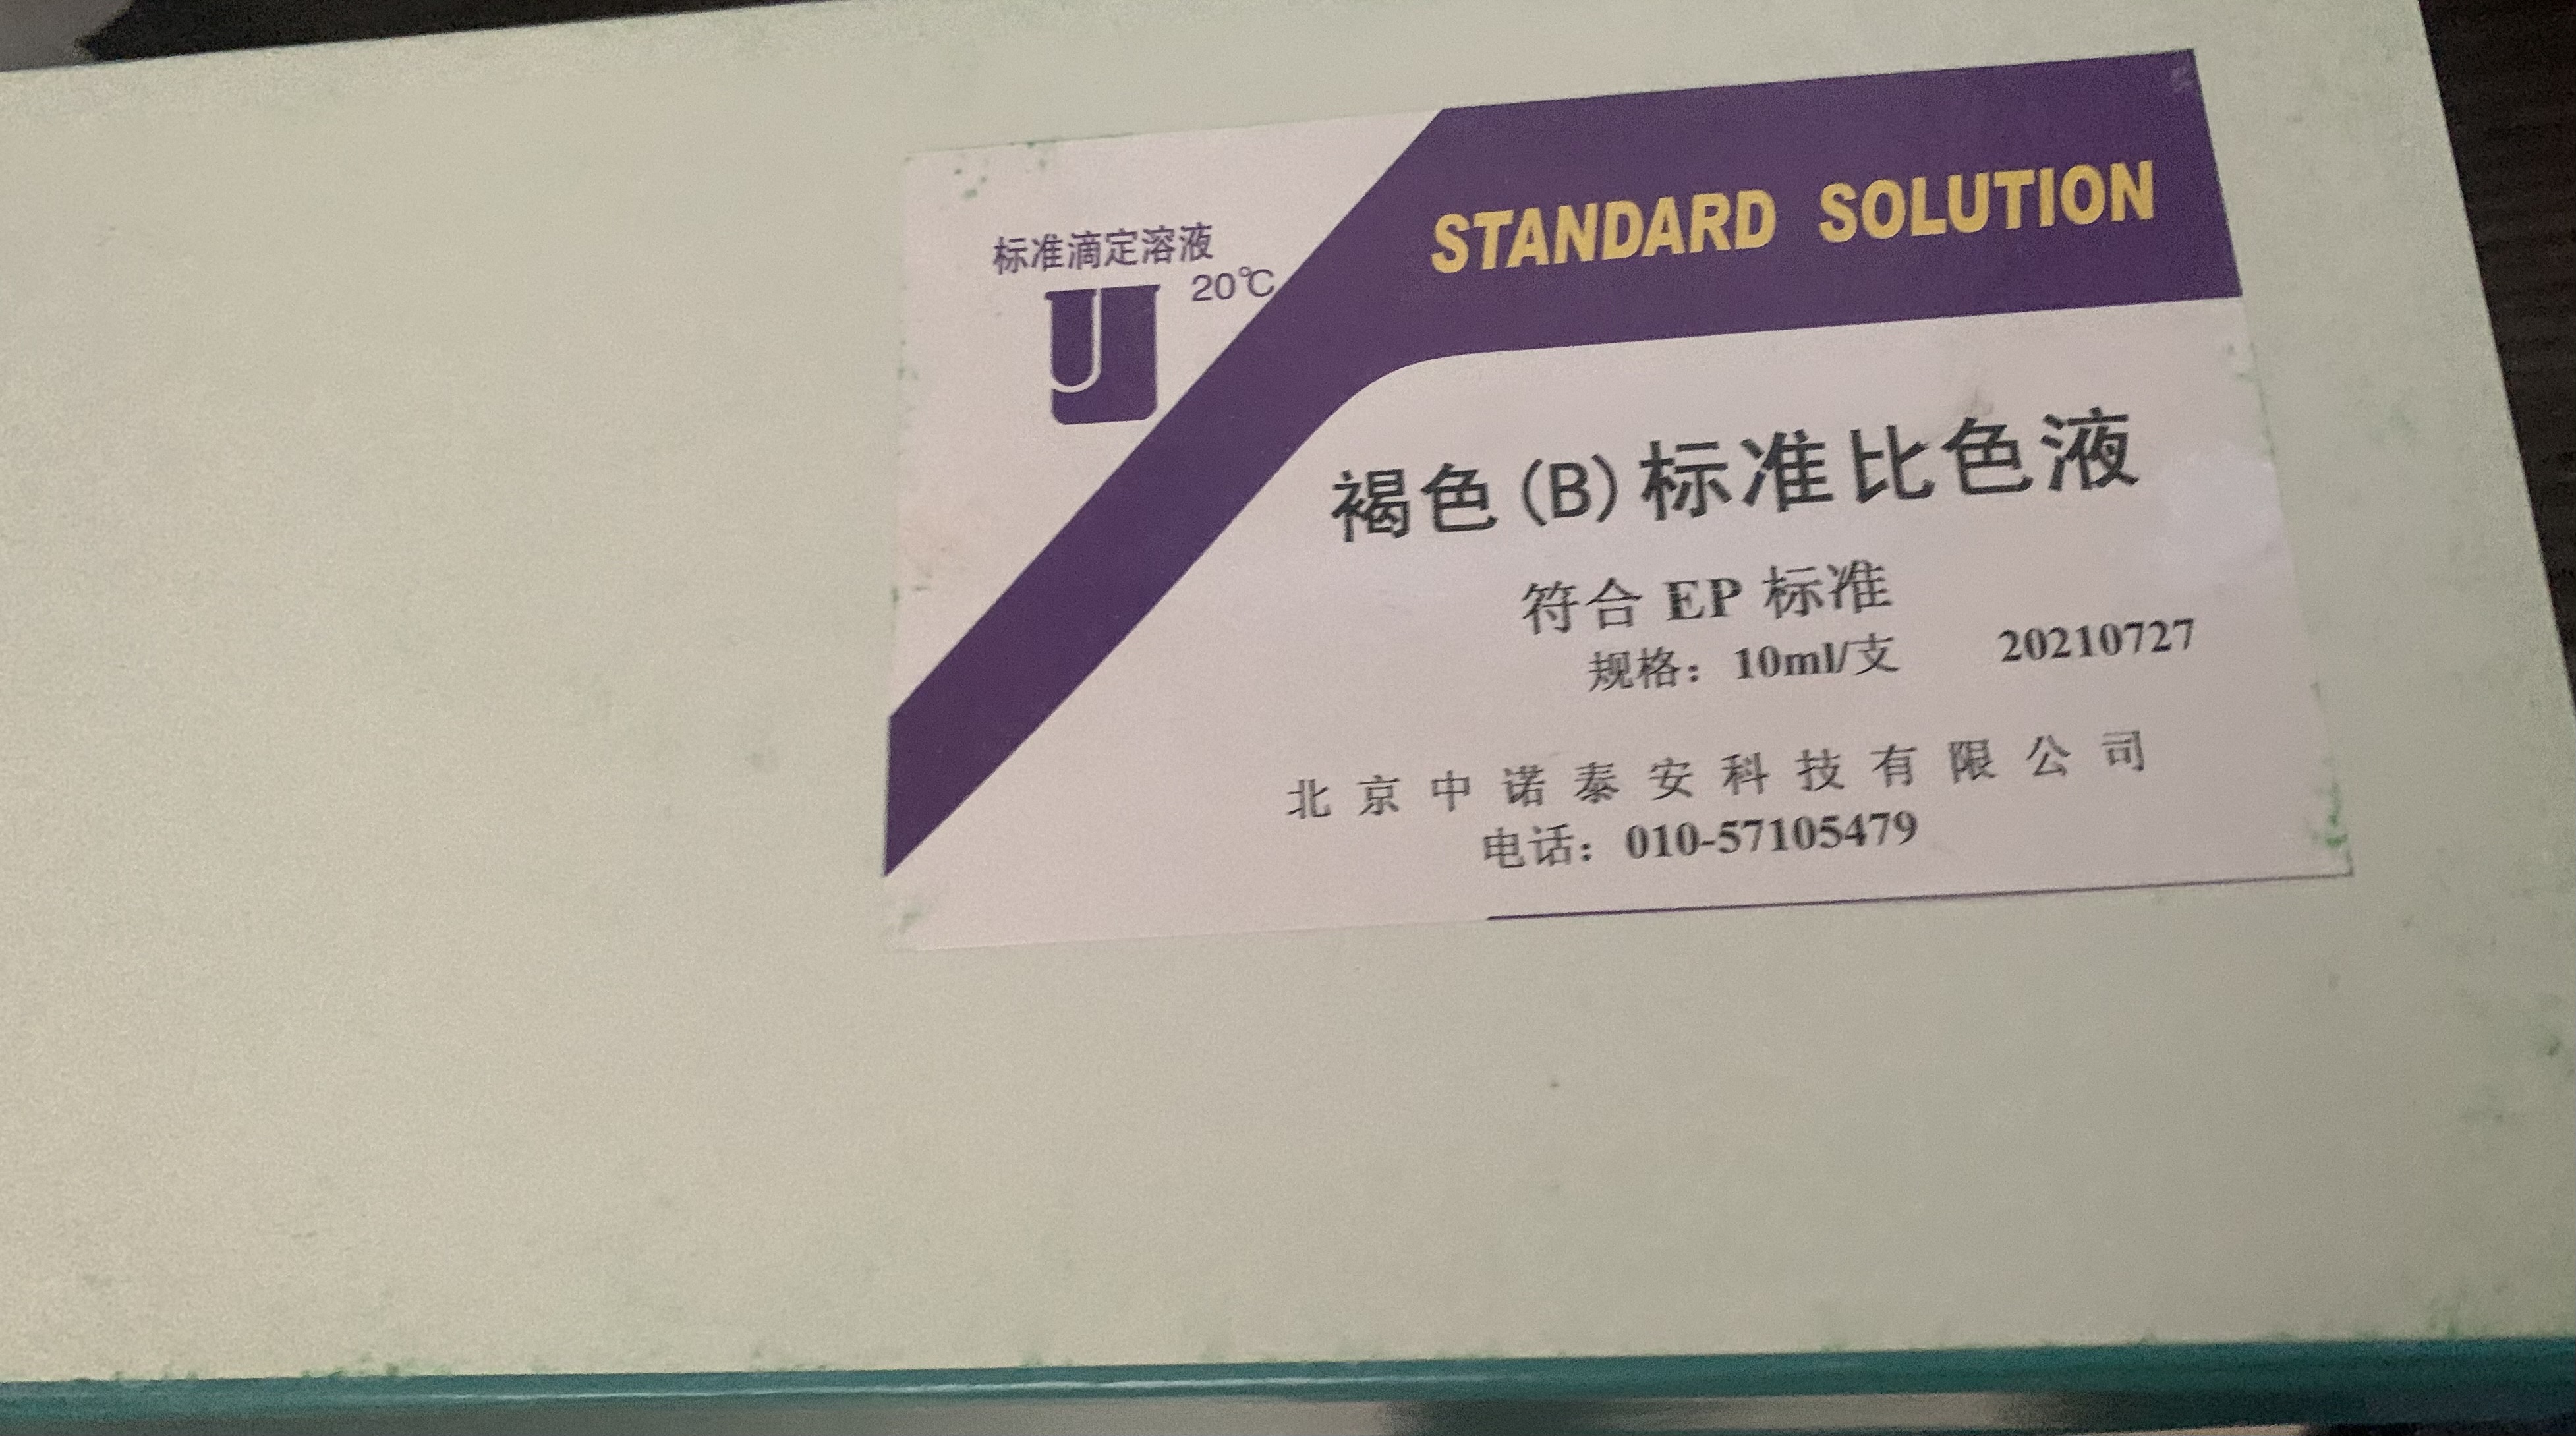 原装CP/EP/USP标准比色液厂家_原装CP/EP/USP标准比色液-北京中诺泰安科技有限公司